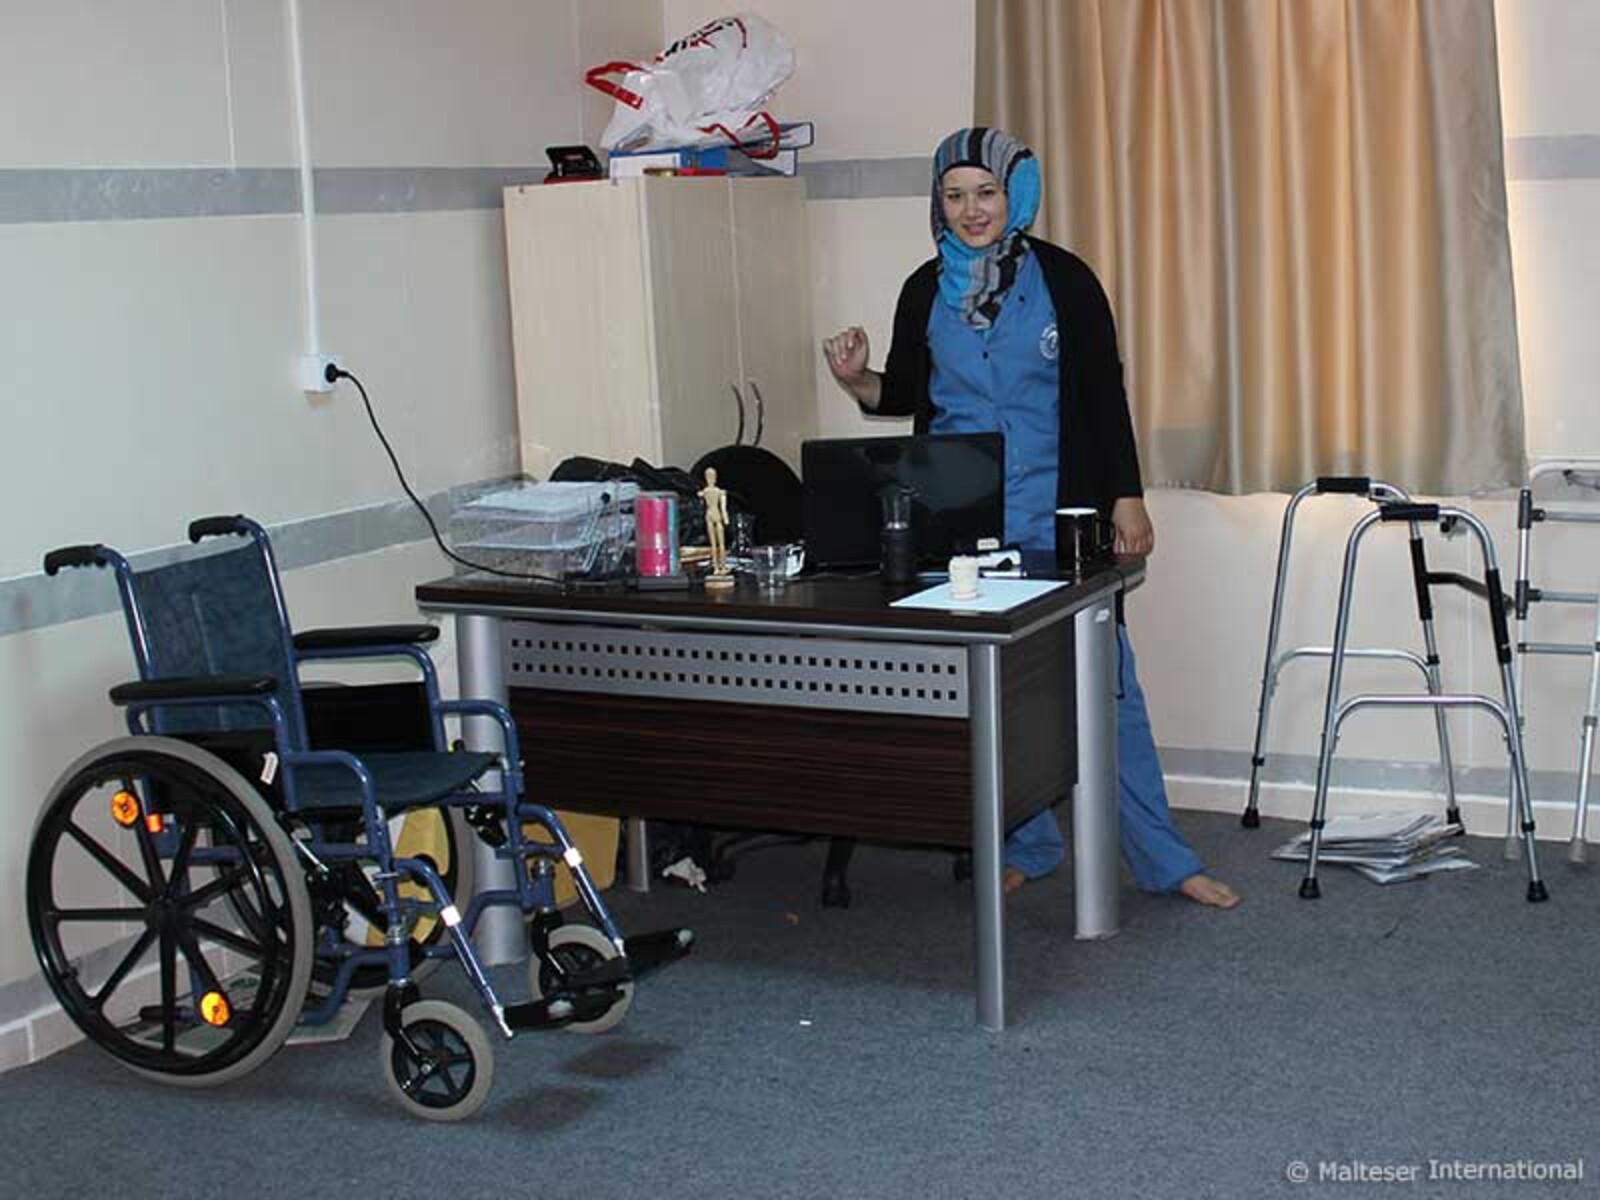 Zilal arbeitet als Physiotherapeutin für Malteser International im Feldhospital in der türkischen Stadt Kilis, drei Kilometer von der syrischen Grenze entfernt